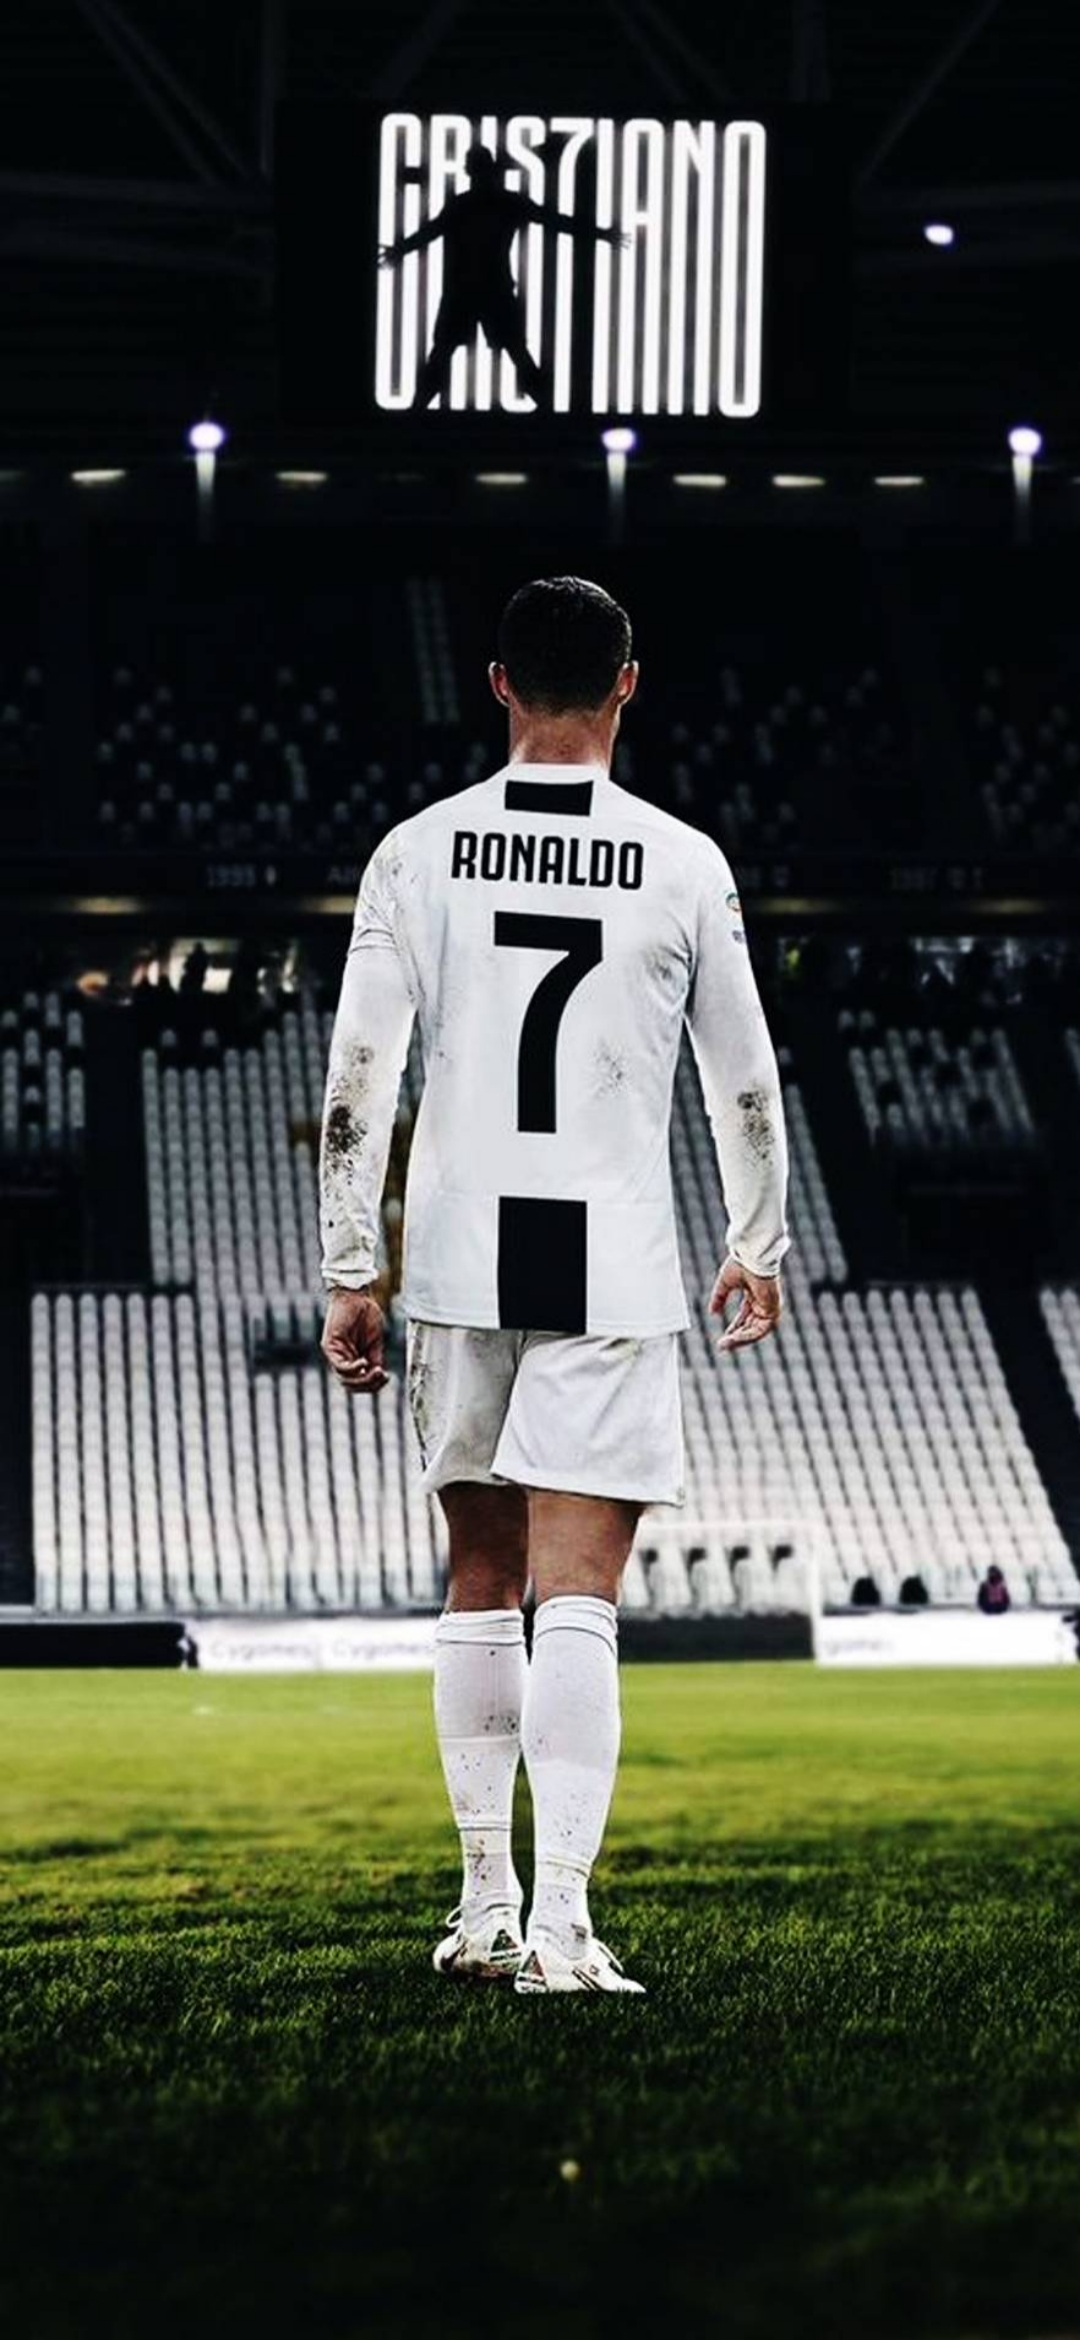 Ảnh nền cầu thủ Cristiano Ronaldo chất lượng cao